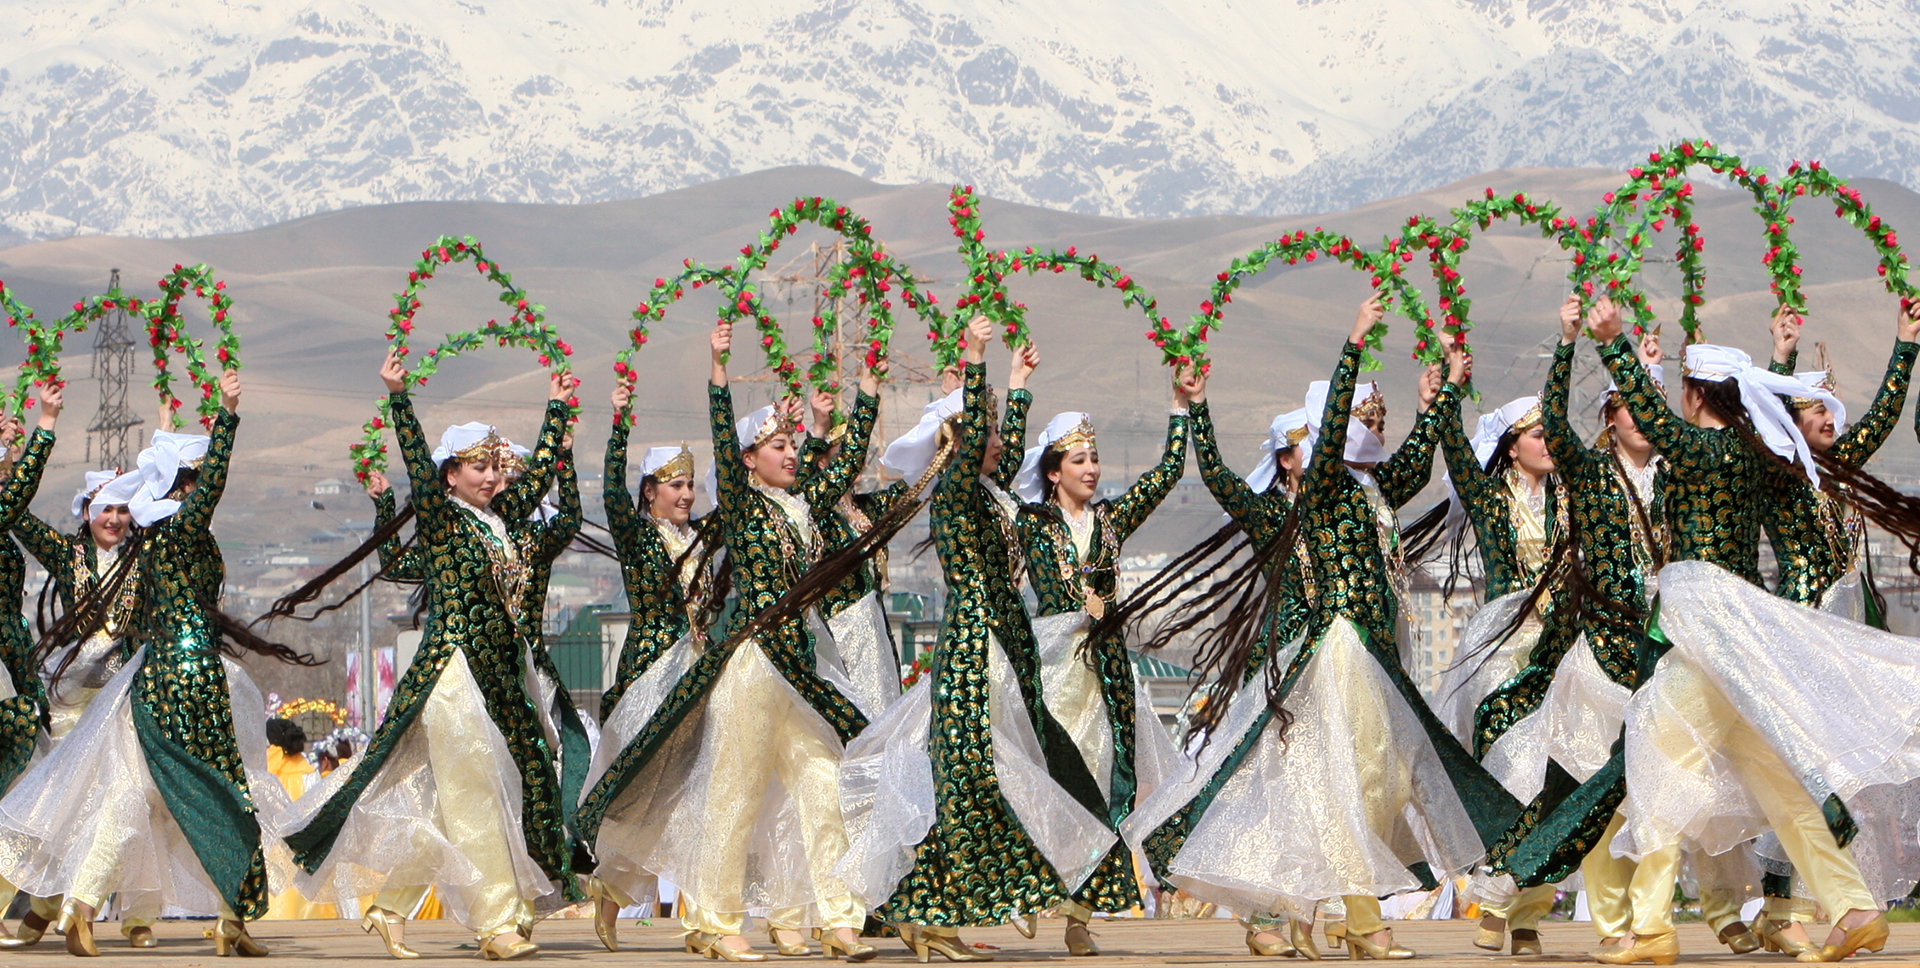 جاذبه های دیدنی تاجیکستان رو می شناسید ؟